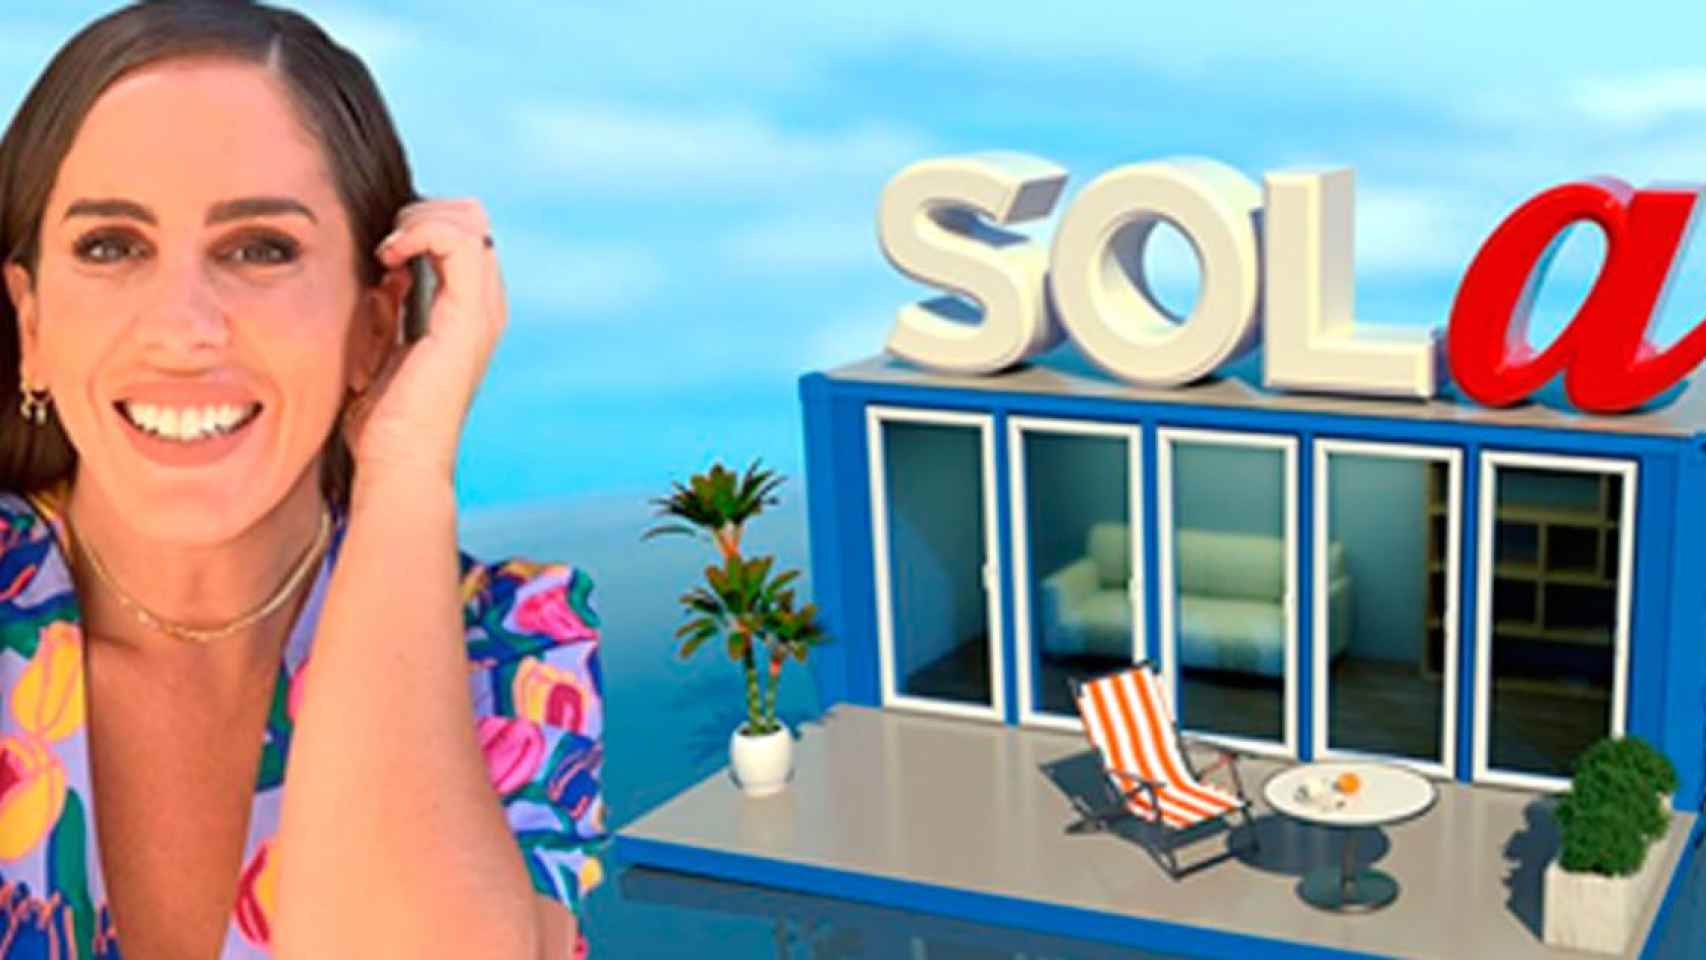 Imagen de Anabel Pantoja en la promoción de lanzamiento de 'Sola' /TELECINCO